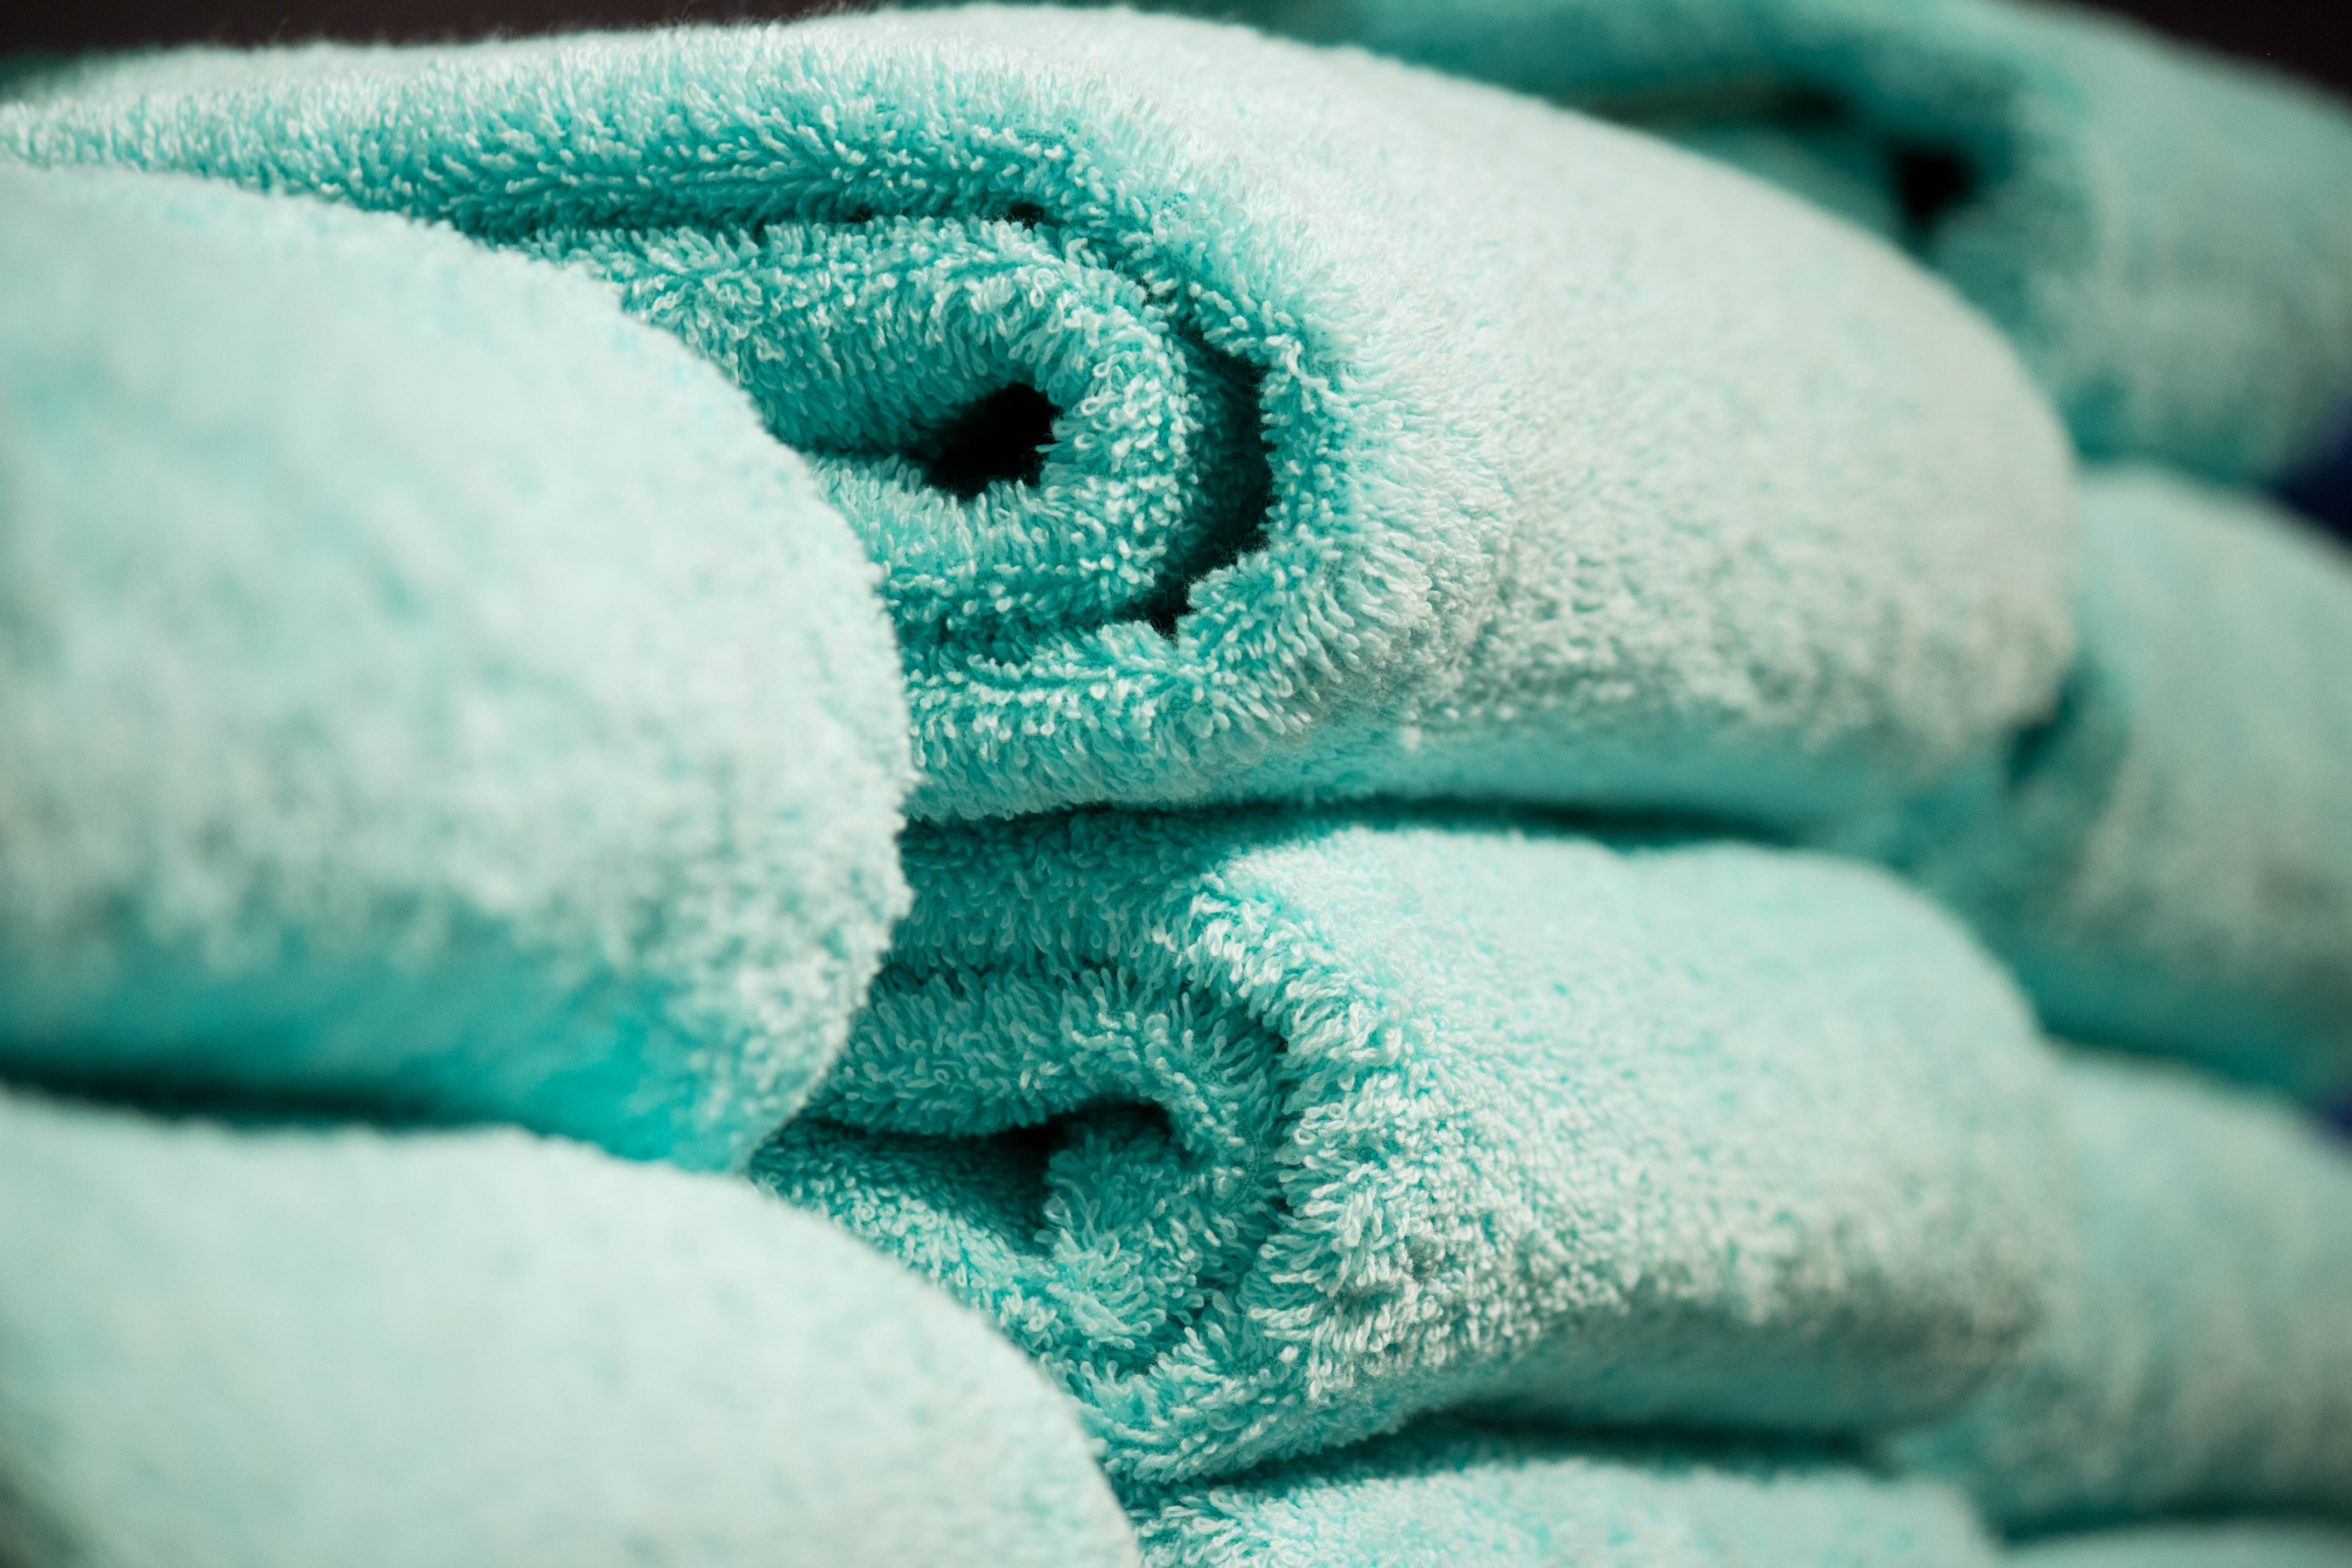 Desconocido O cualquiera Perder Trucos para eliminar el olor a humedad de las toallas de baño